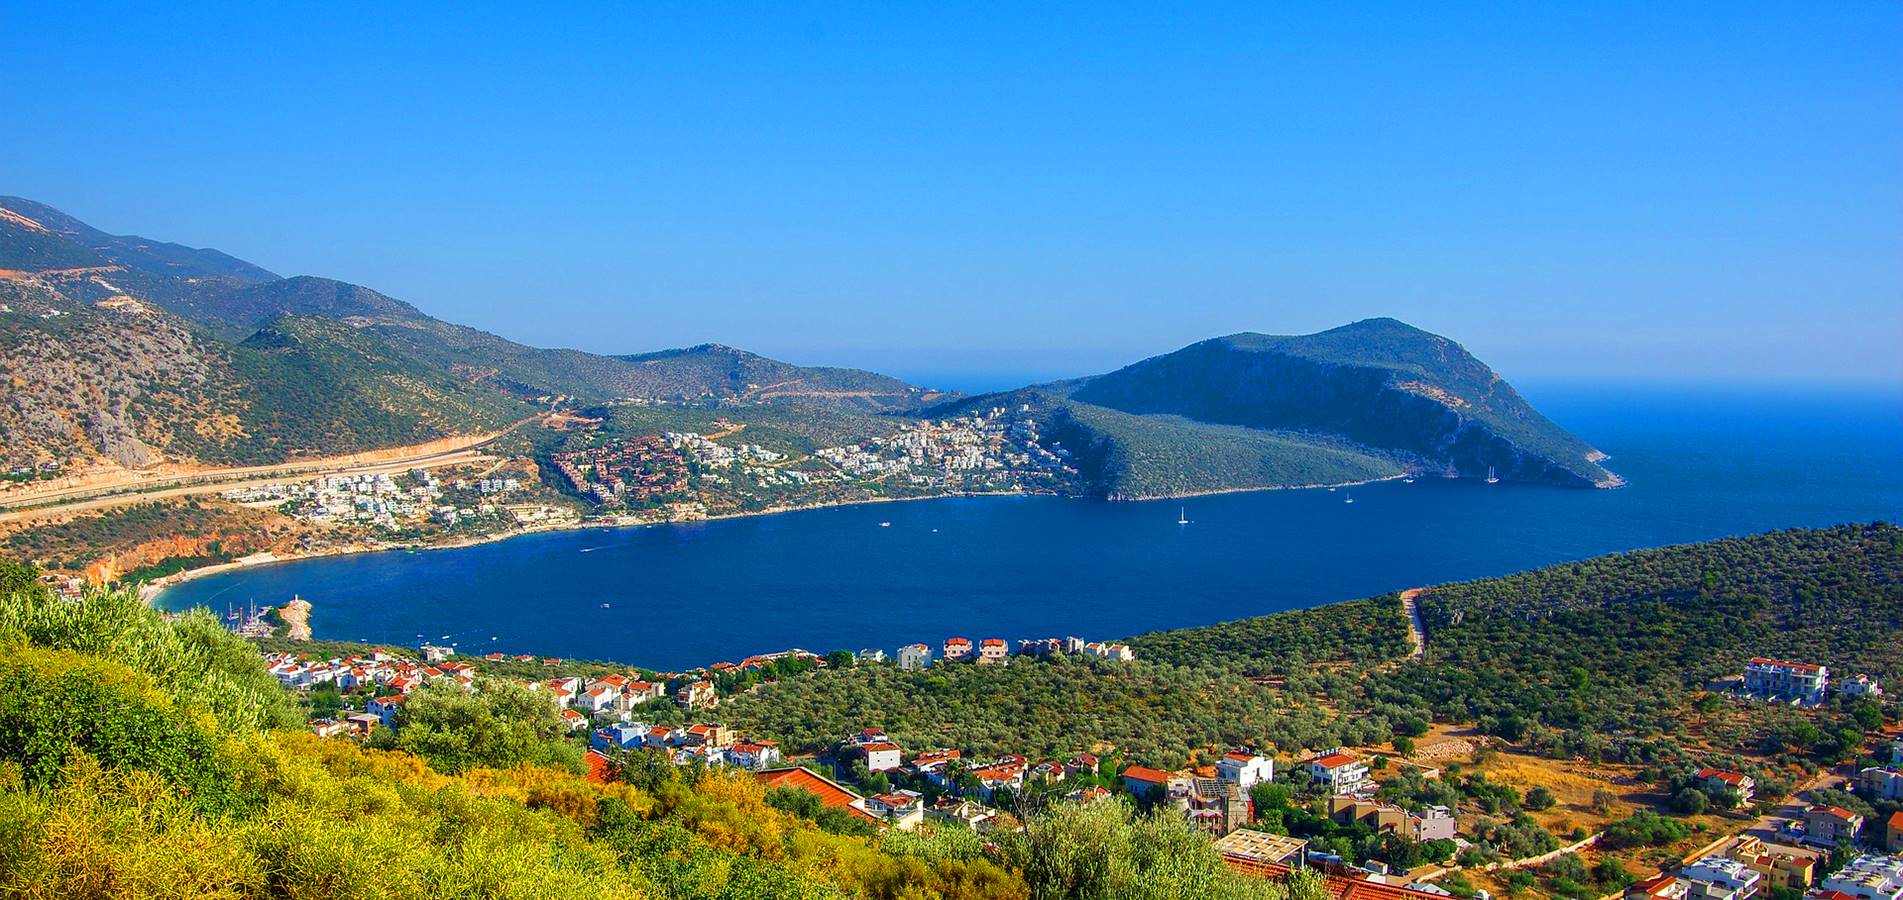 السياحة في تركيا 2021: شركة مقام للسياحة - انطاليا أرض السحر والجمال